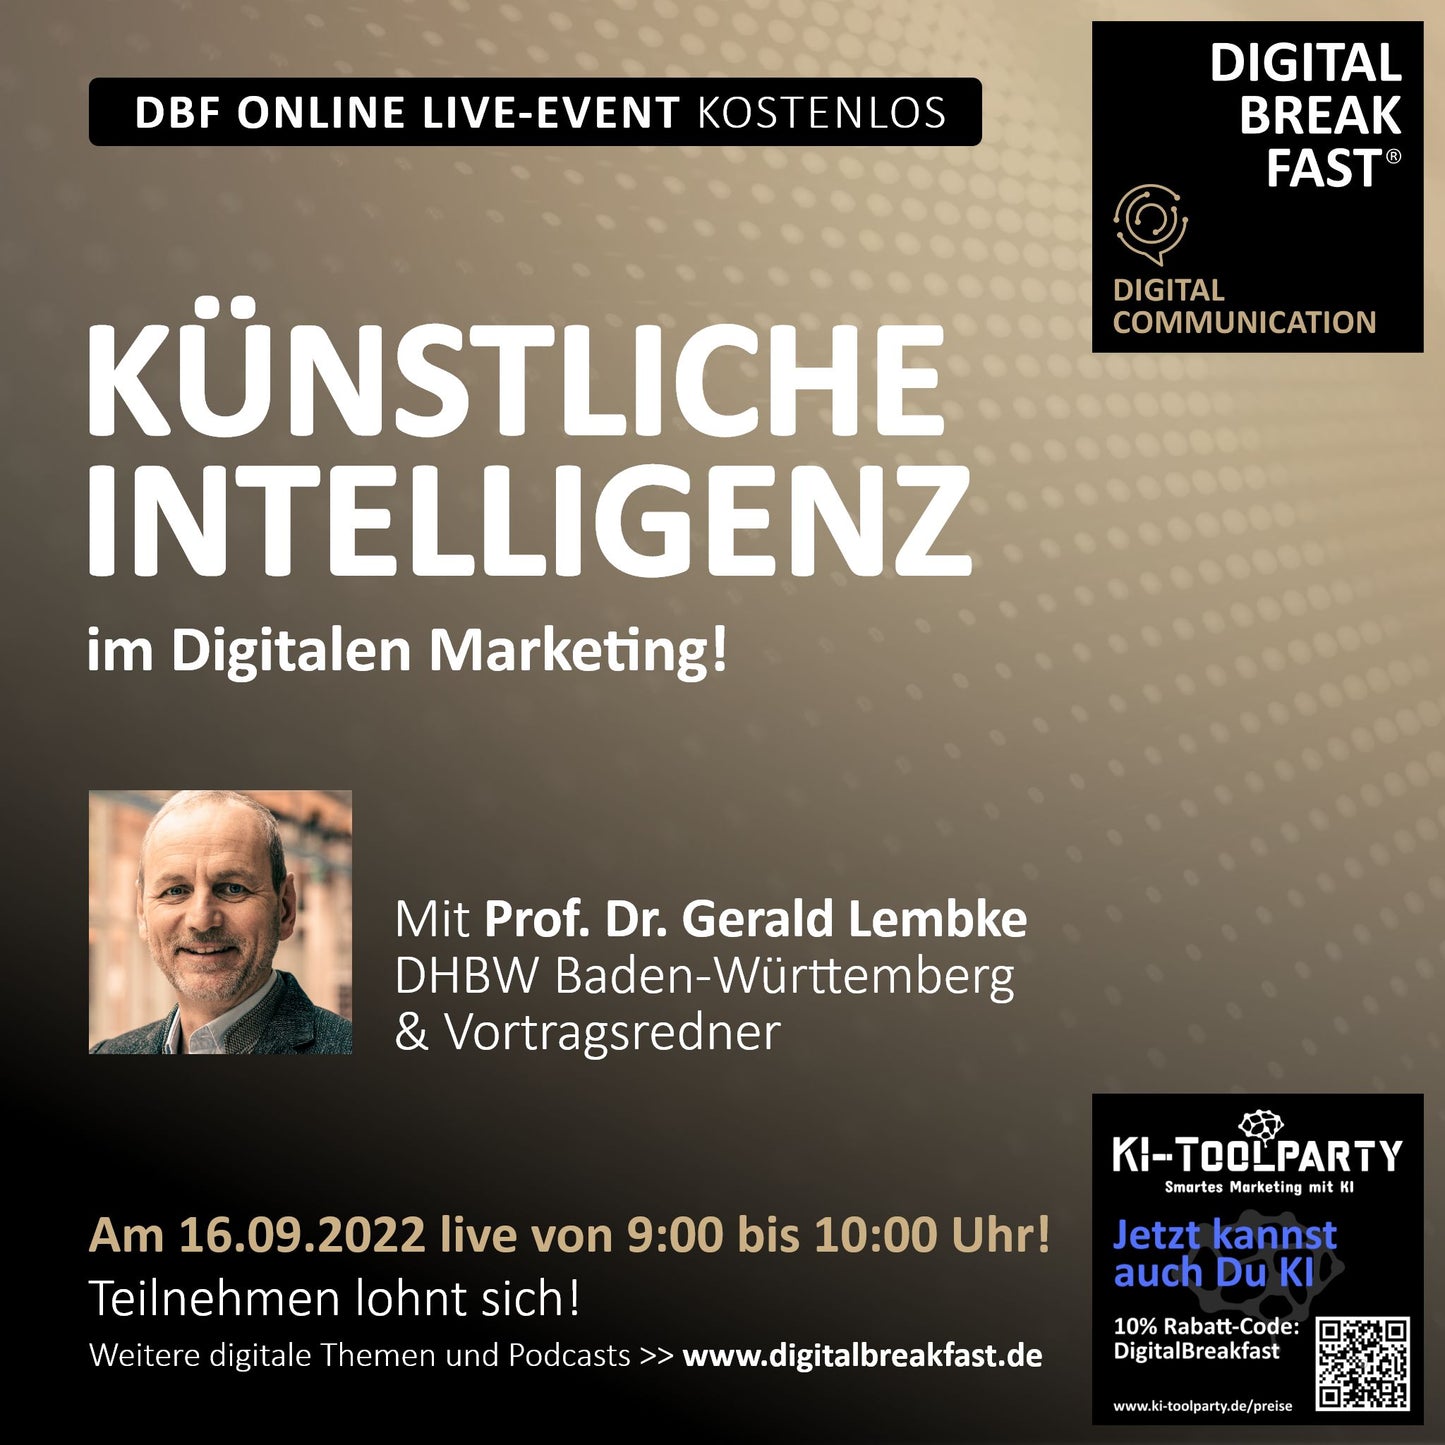 16.09.2022 | "Künstliche Intelligenz im Digitalen Marketing!" Prof. Dr. Gerald Lembke I DHBW Baden-Württemberg & Vortragsredner & KI-TOOLPARTY